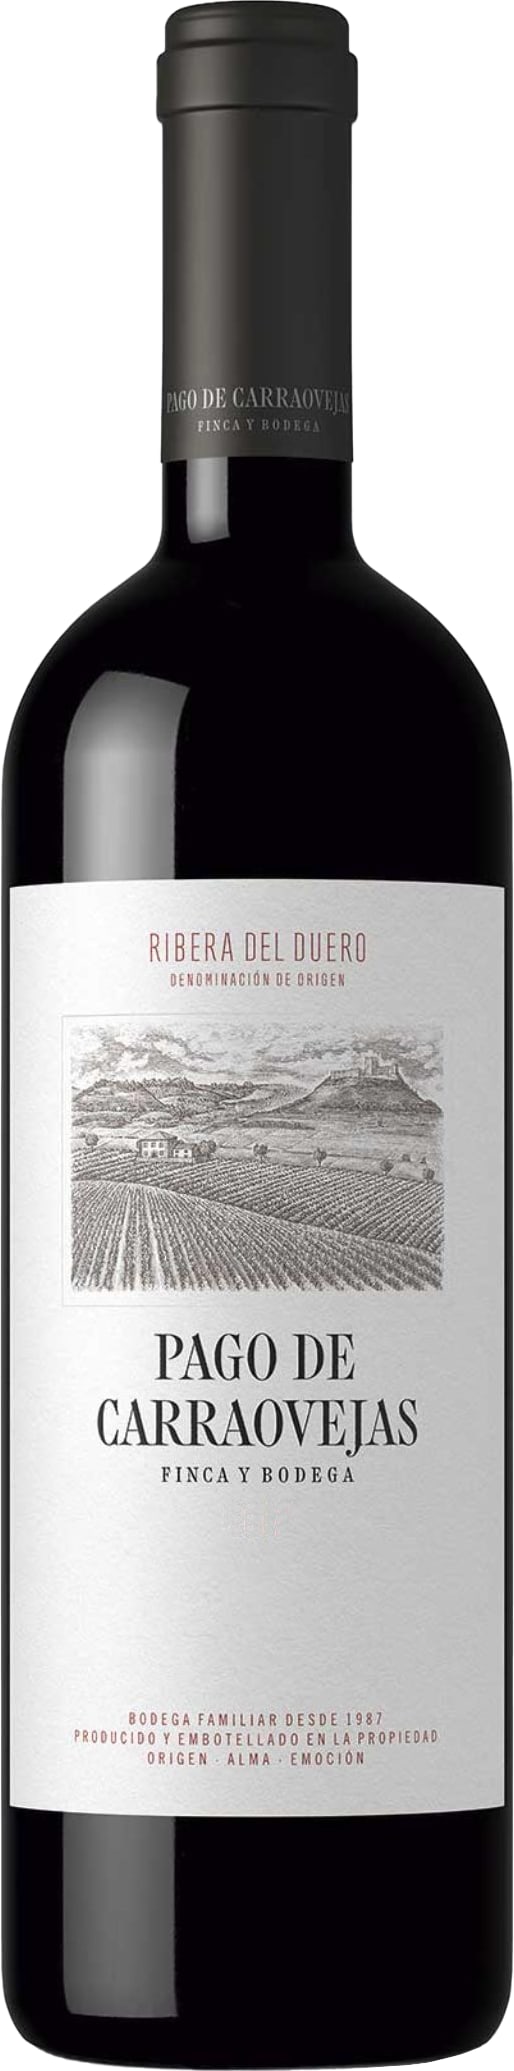 Pago de Carraovejas Ribera del Duero 2020 75cl - Buy Pago de Carraovejas Wines from GREAT WINES DIRECT wine shop